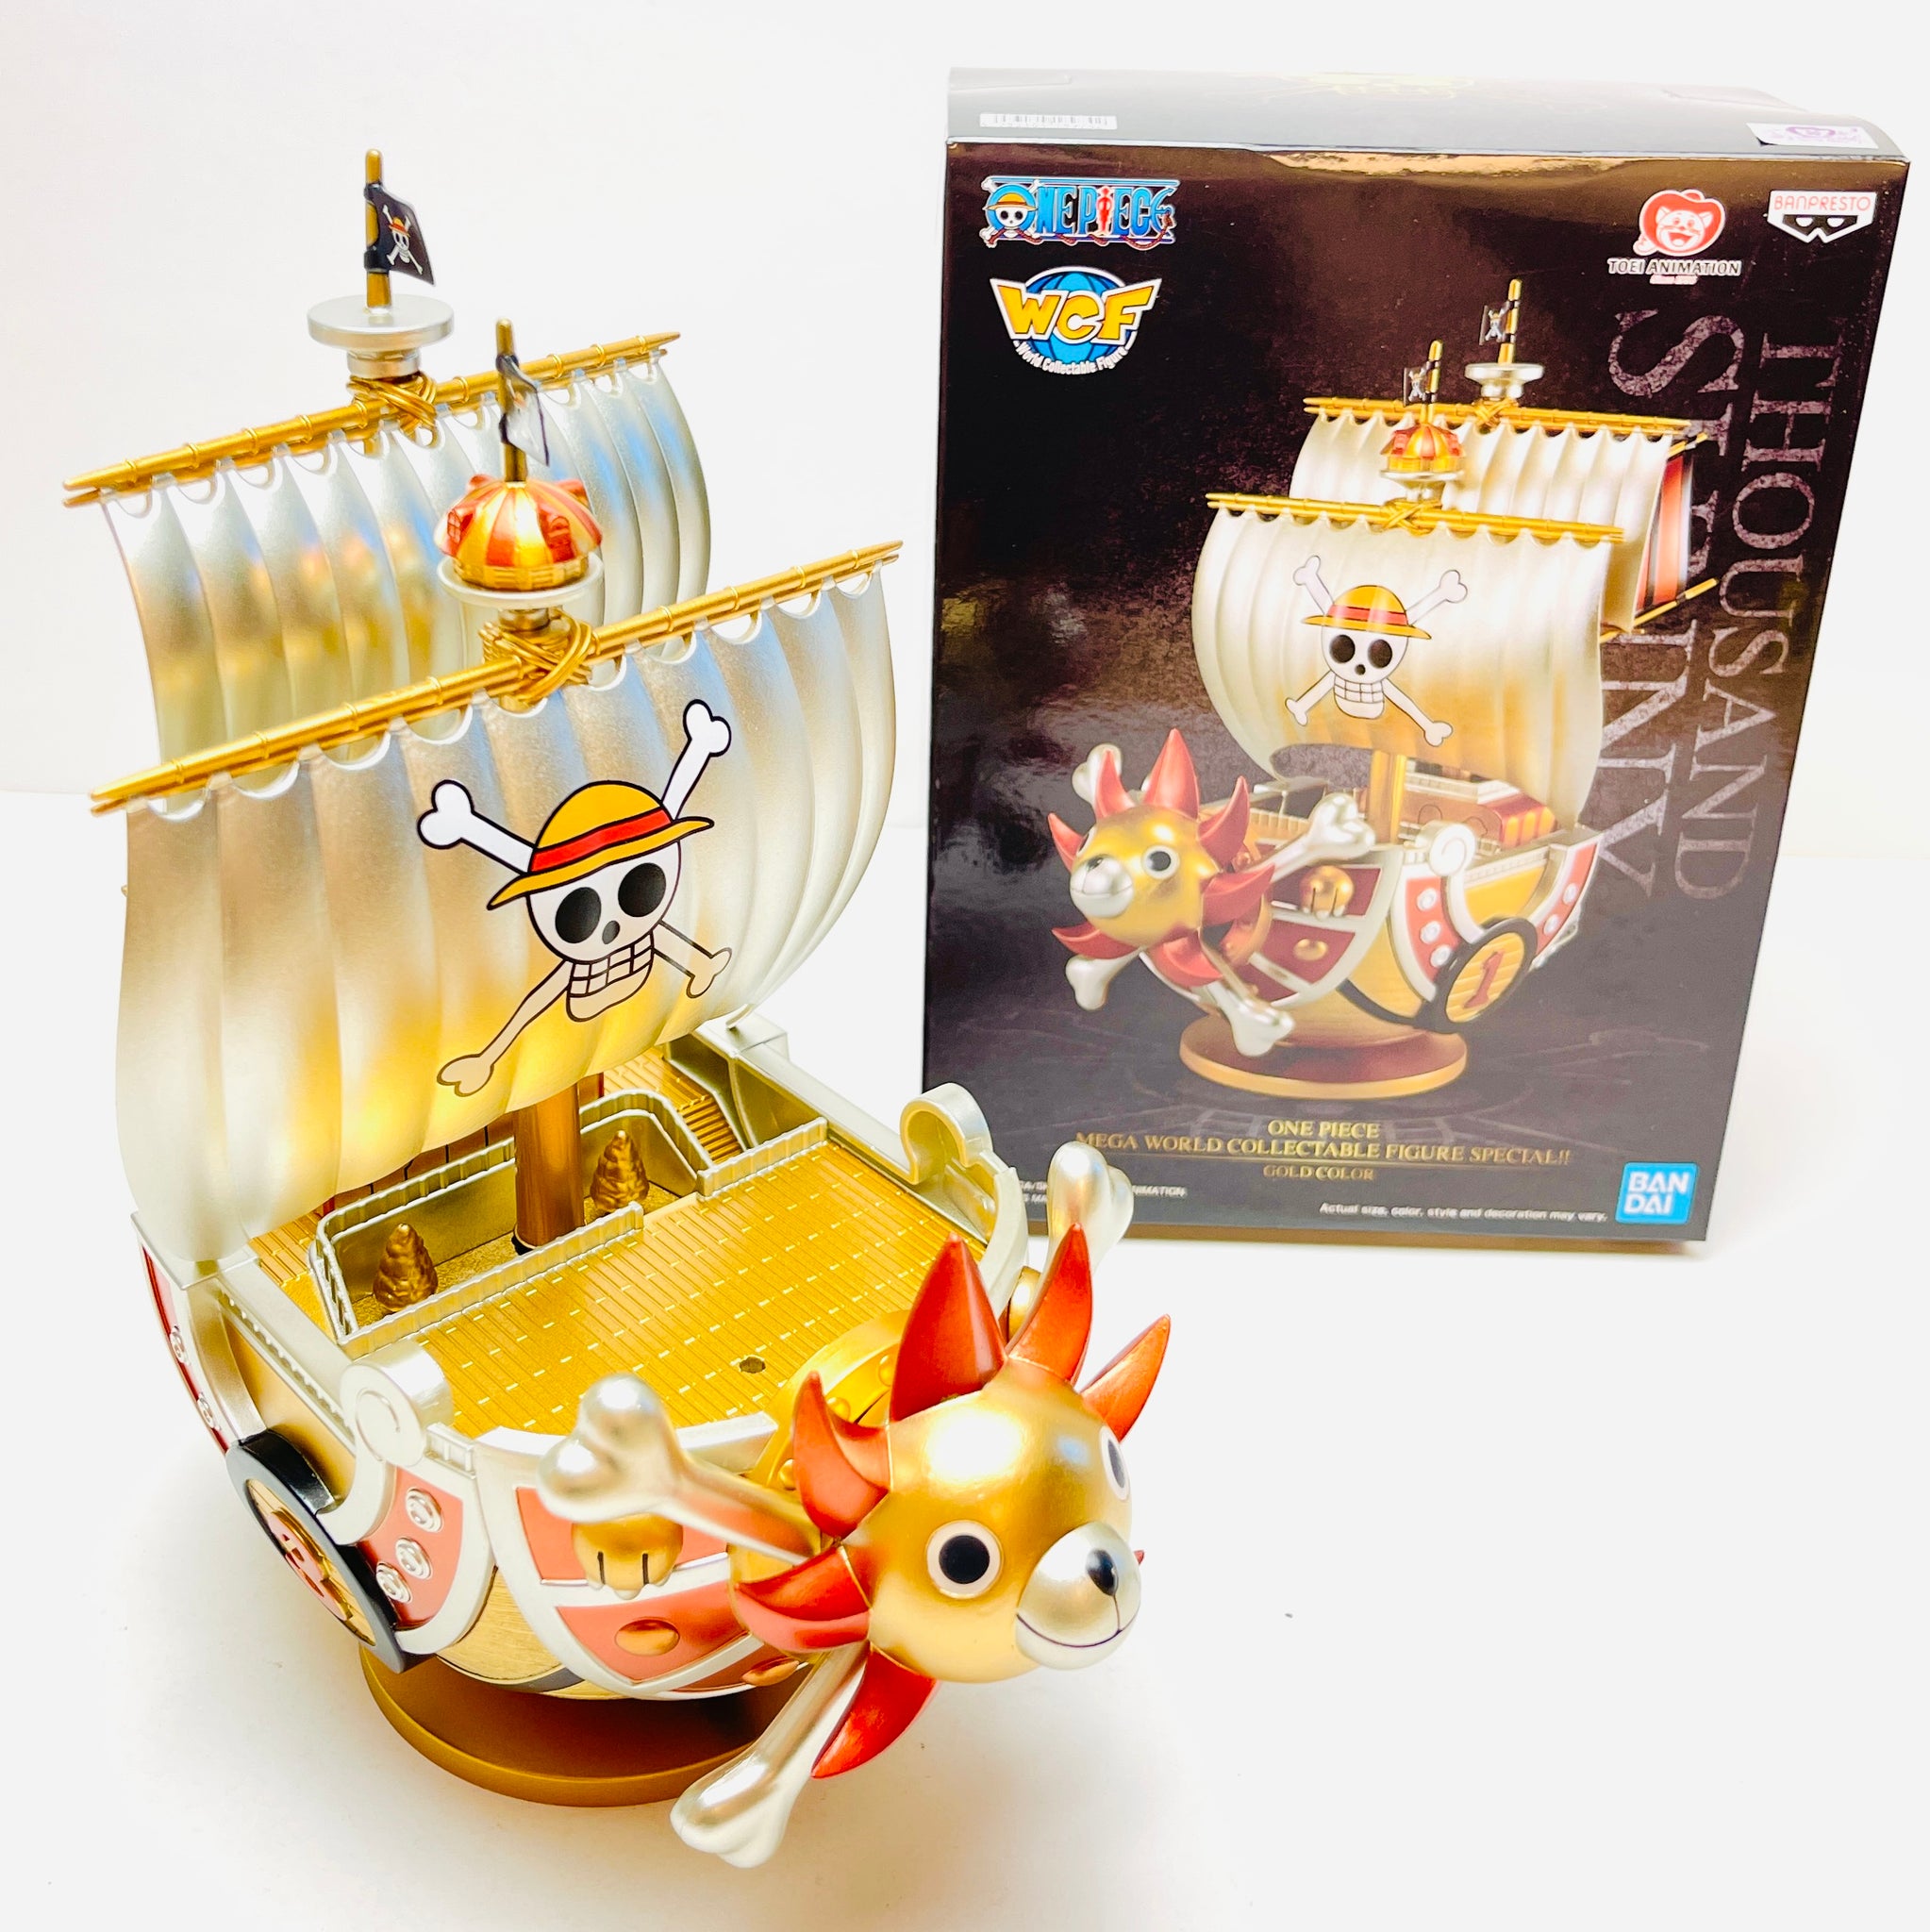 BLEMISHED Banpresto One Piece Mega World Collectable Thousand Sunny Gold  Bandai